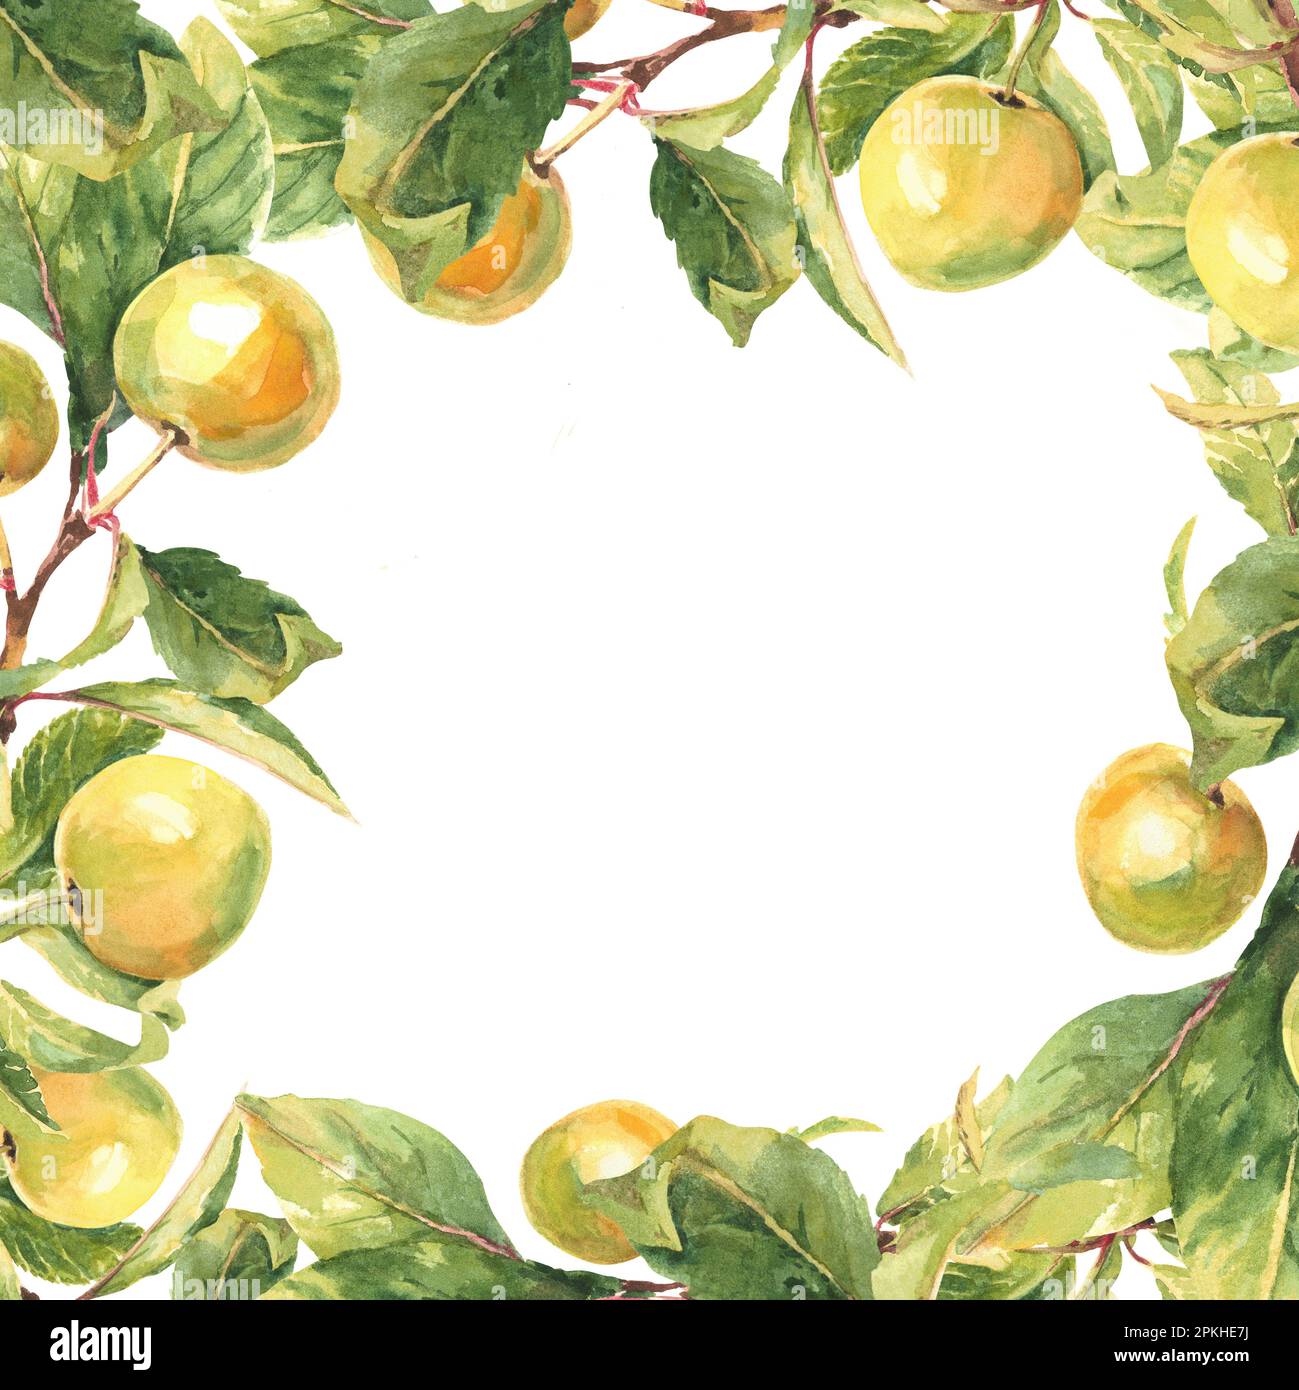 Cornice quadrata da rami giallo mela su sfondo bianco. illustrazione acquerello Foto Stock